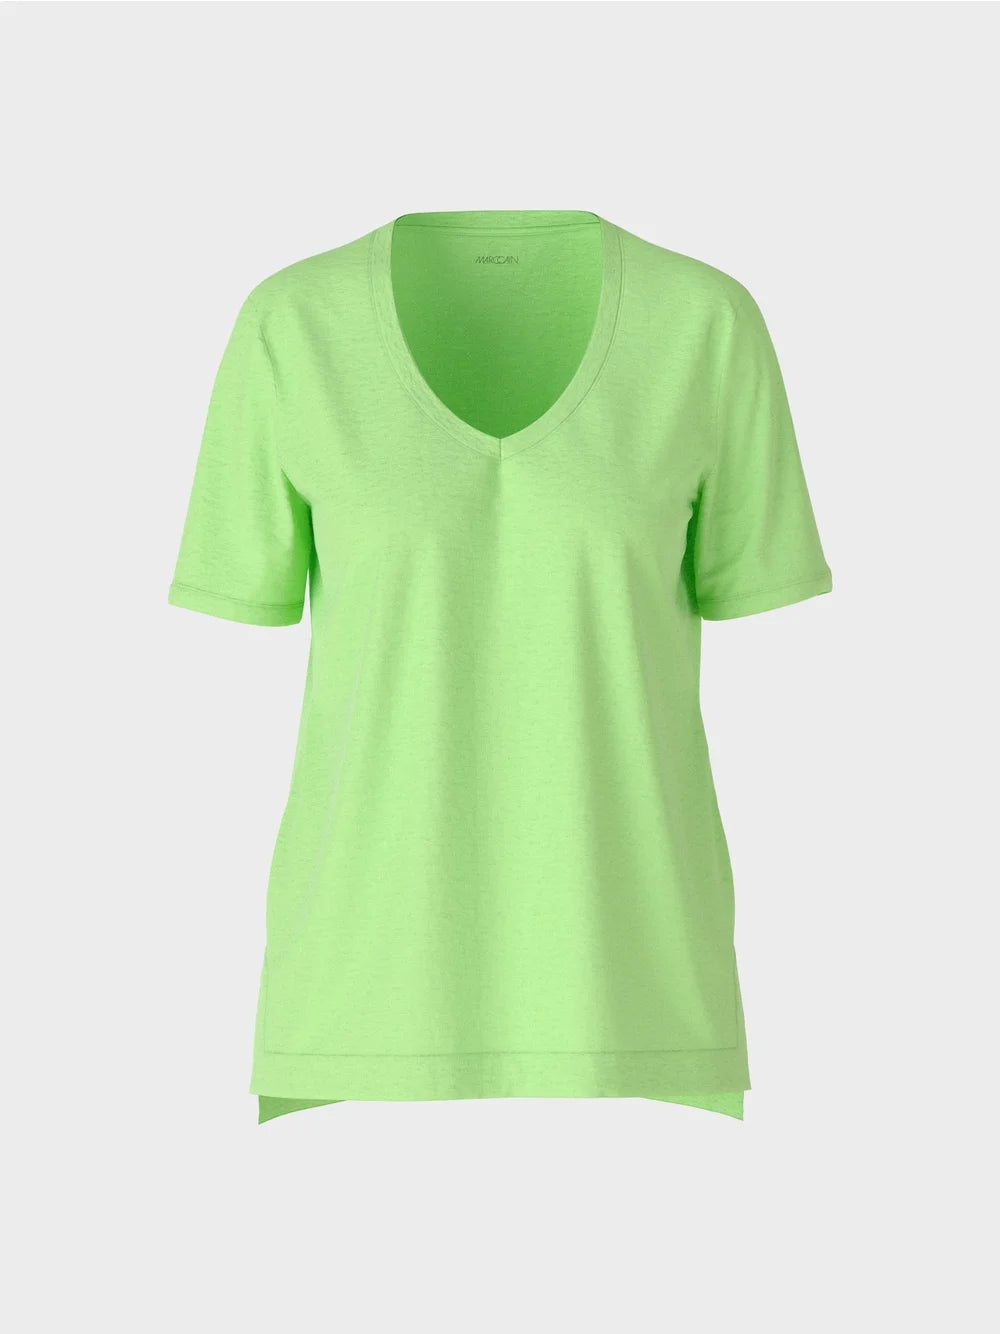 Marc Cain Light Apple Green Feminine T-shirt with V-neck